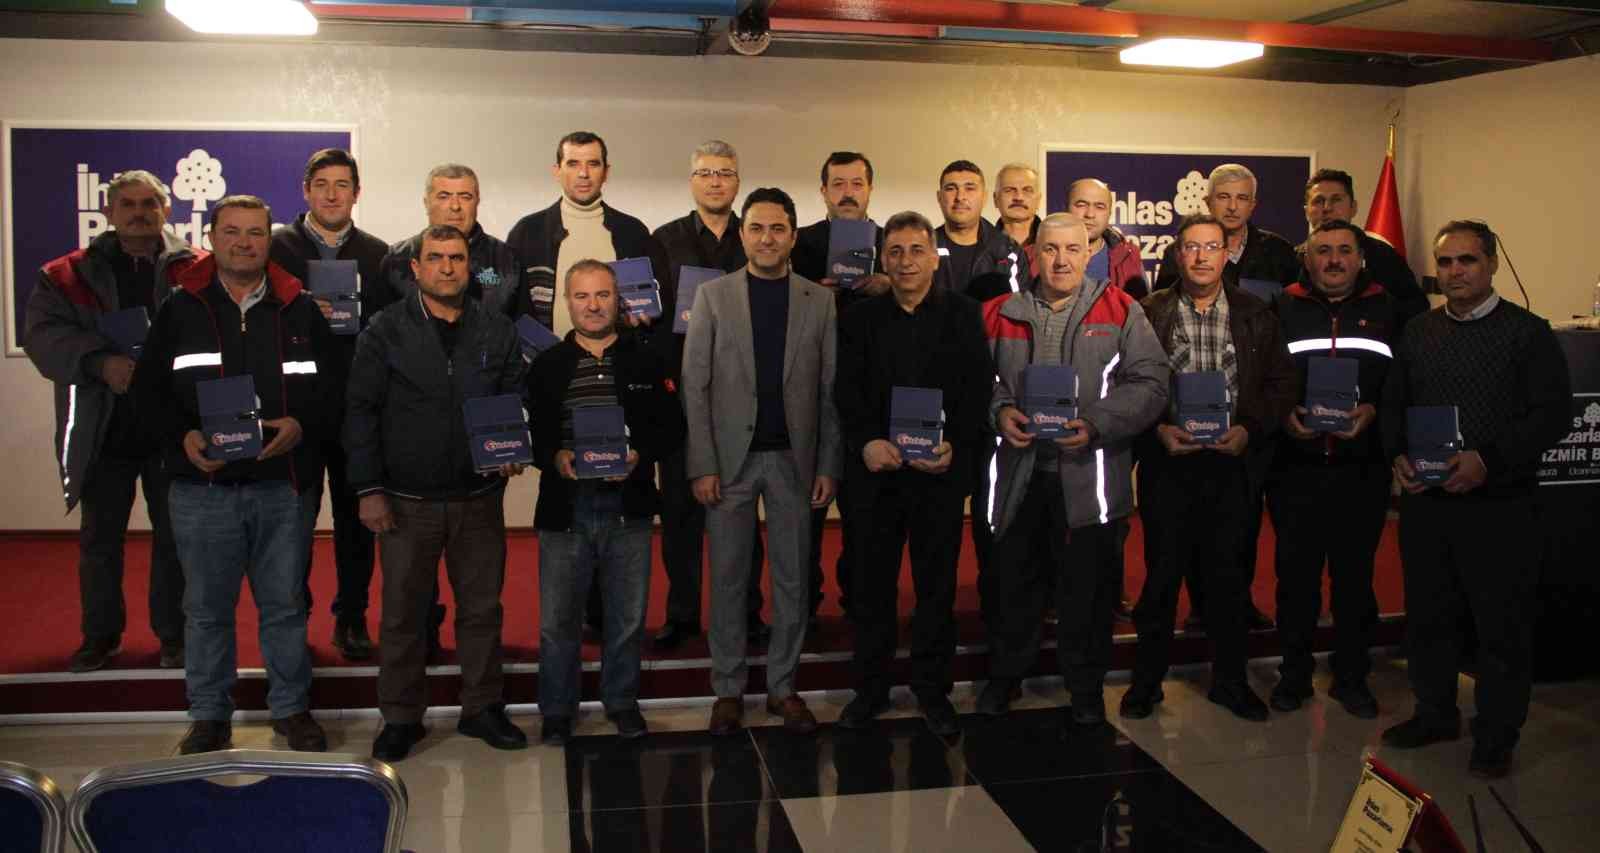 Türkiye Gazetesi 10 Ocak’ta çalışanlarını unutmadı